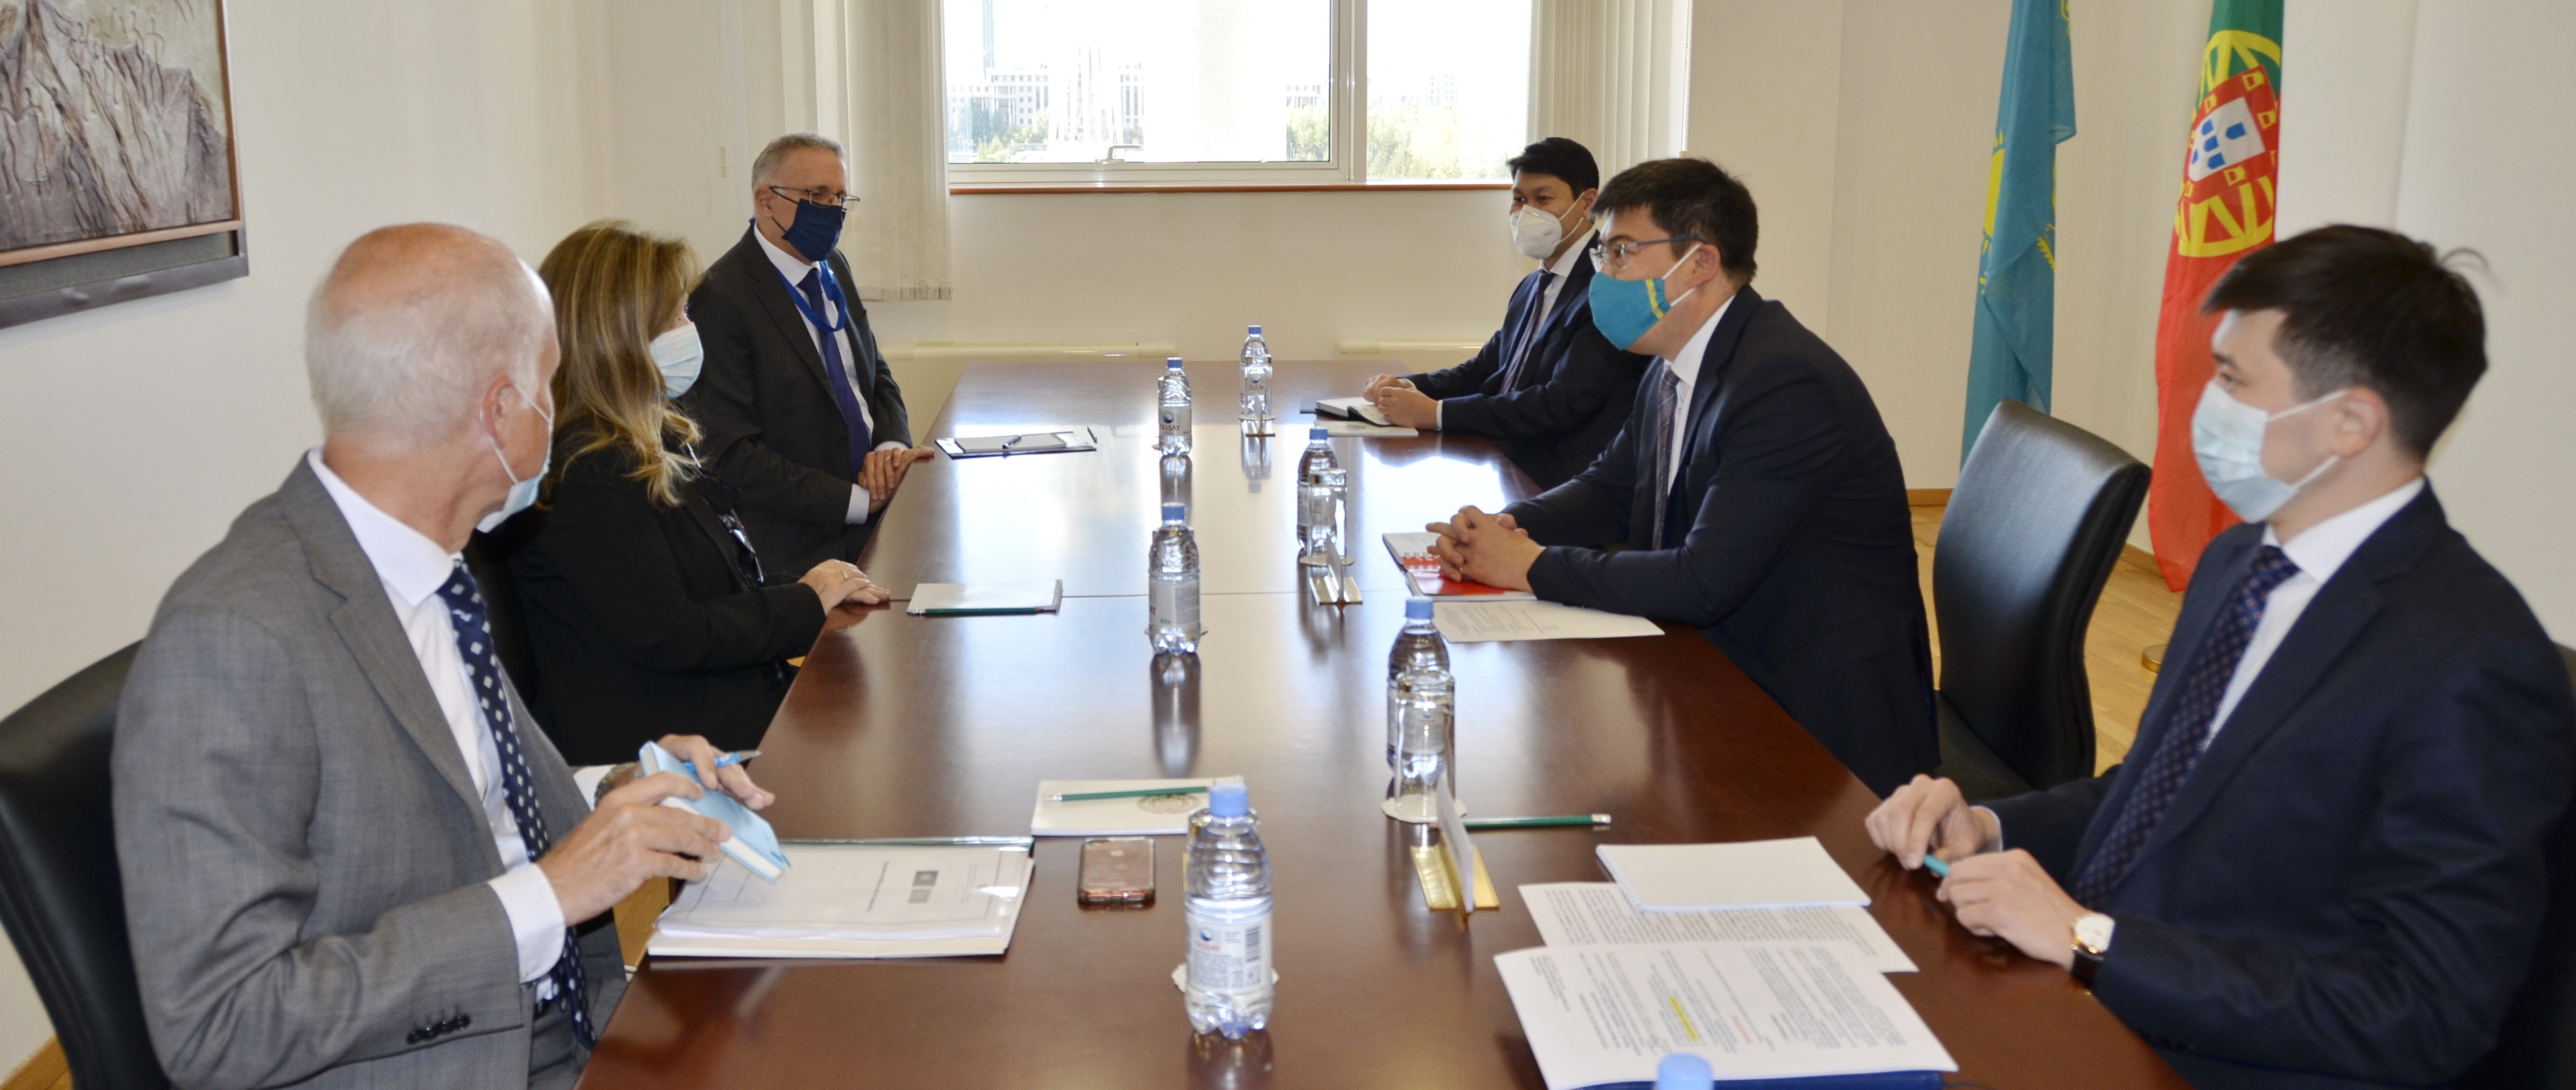 В Нур-Султане состоялся четвертый раунд политических консультаций между министерствами иностранных дел Казахстана и Португалии